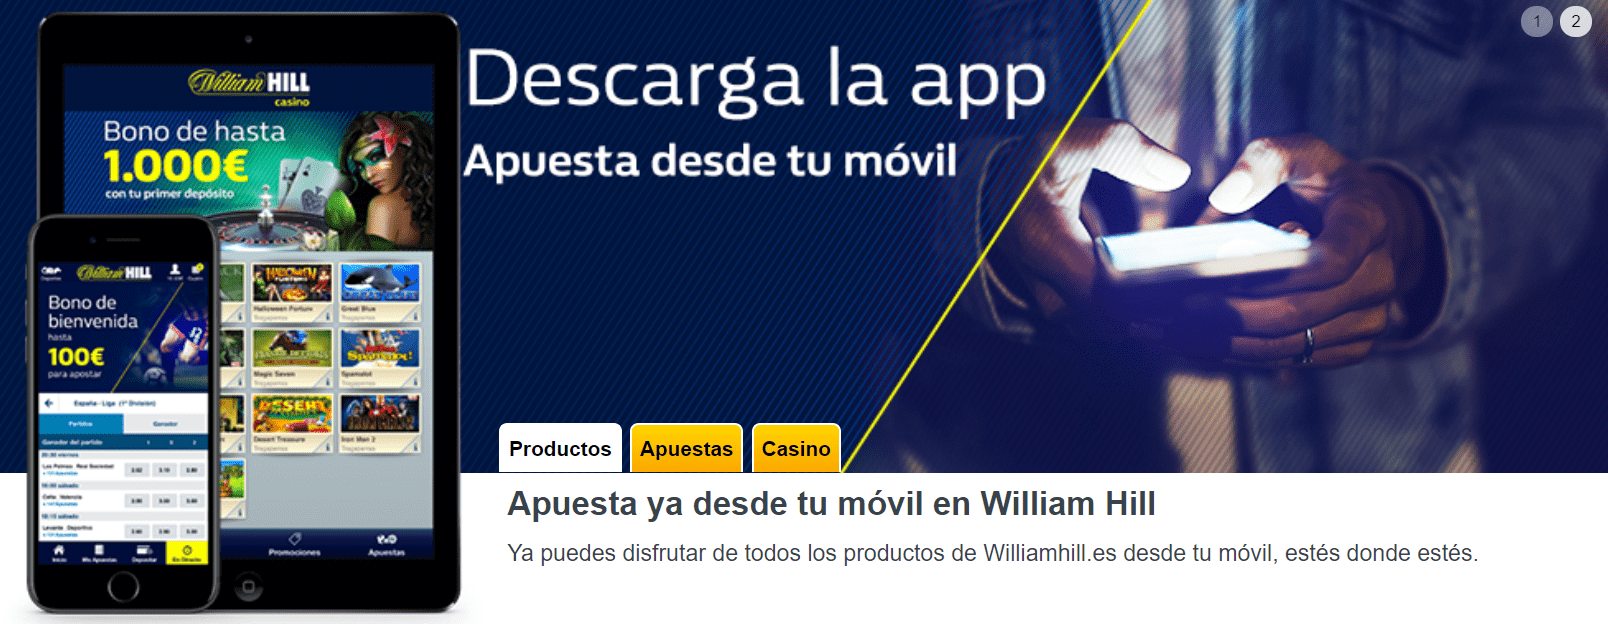 William Hill Mobile Casino beste casino app